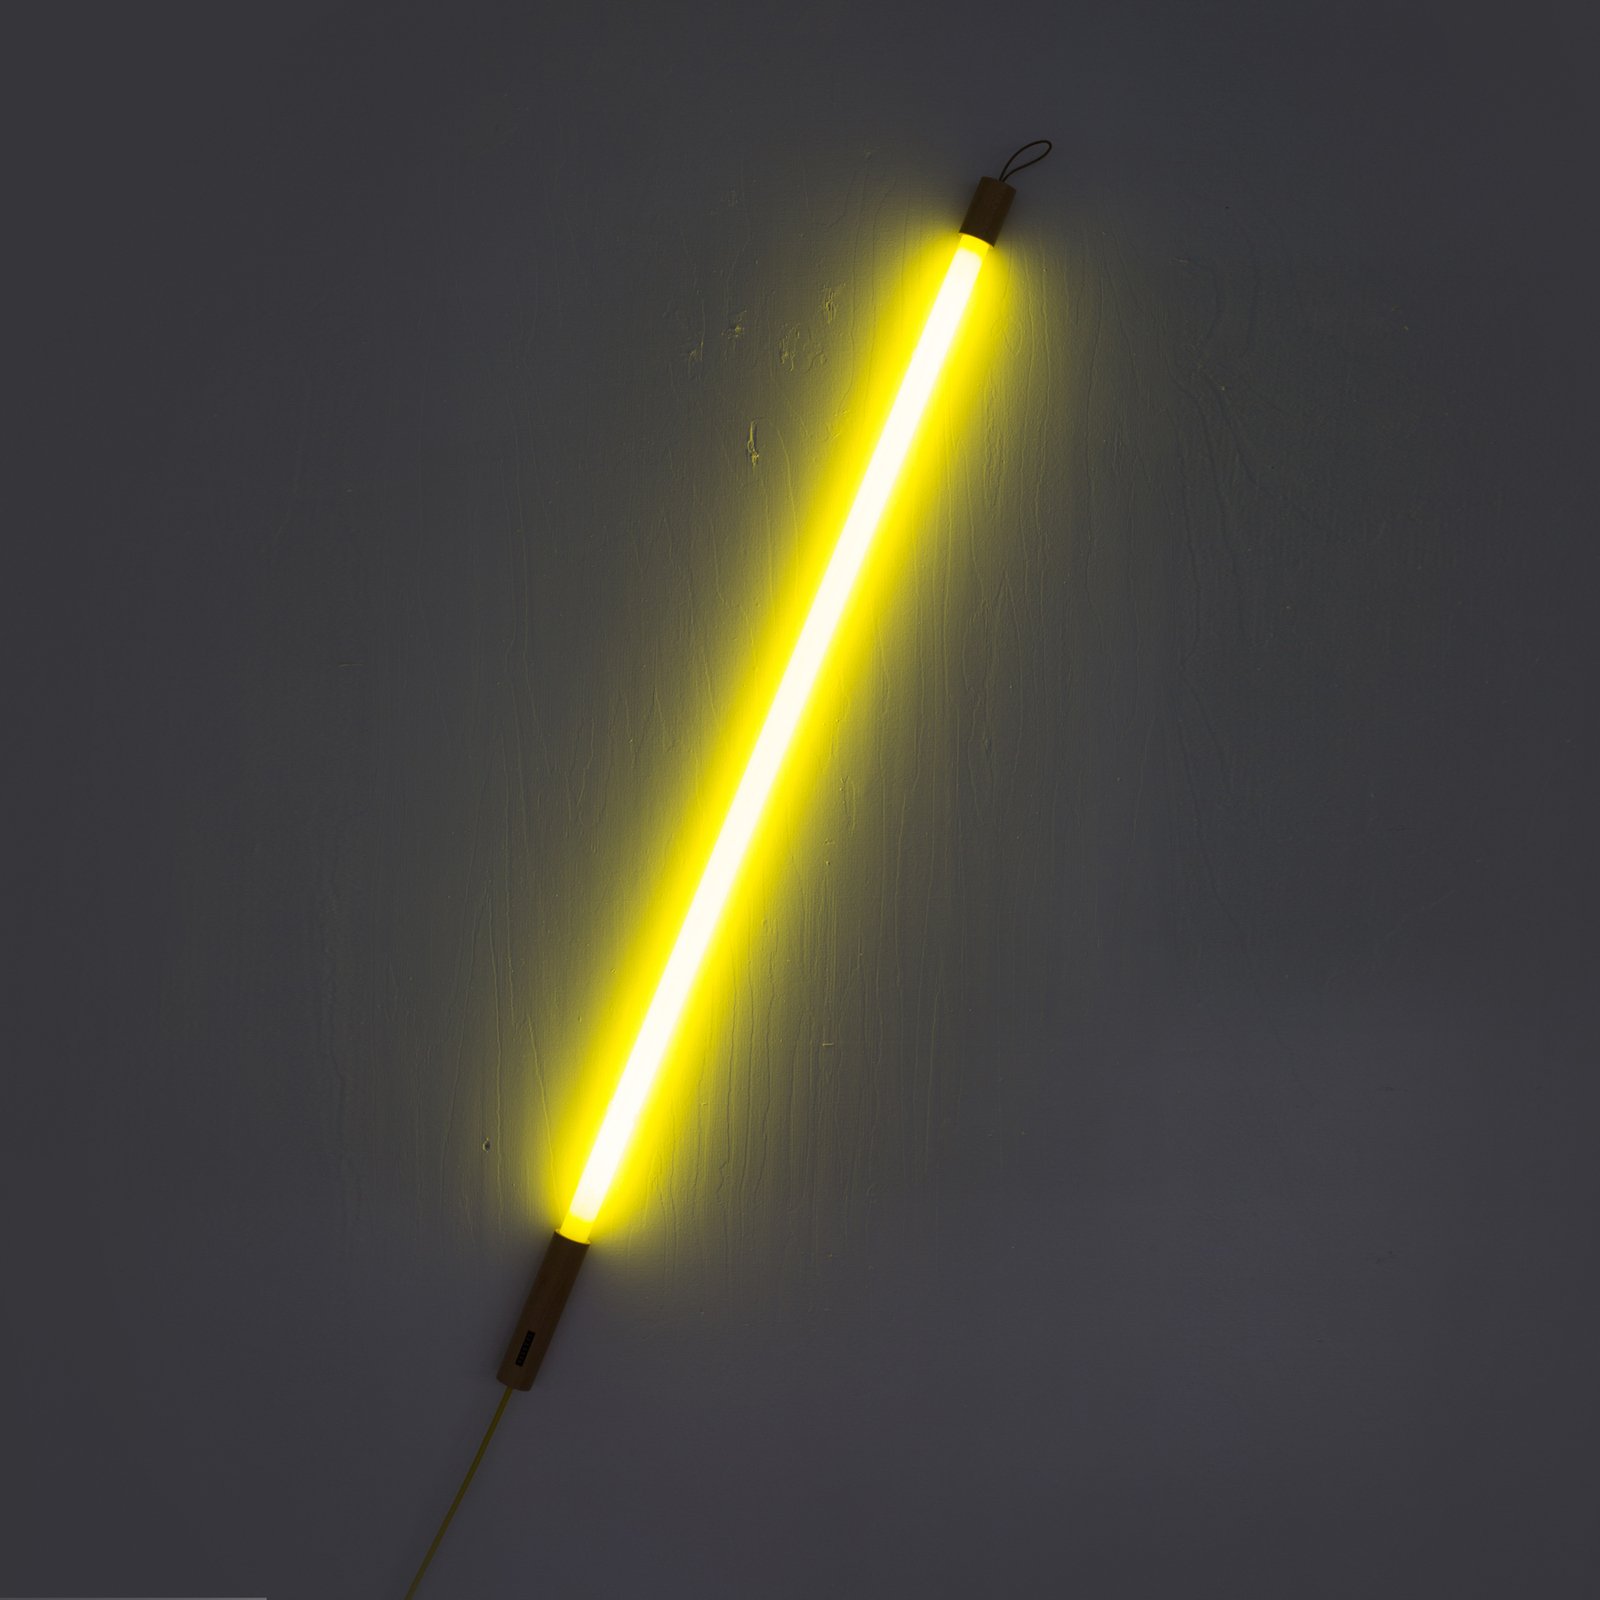 LED vloerlamp Linea met hout, geel